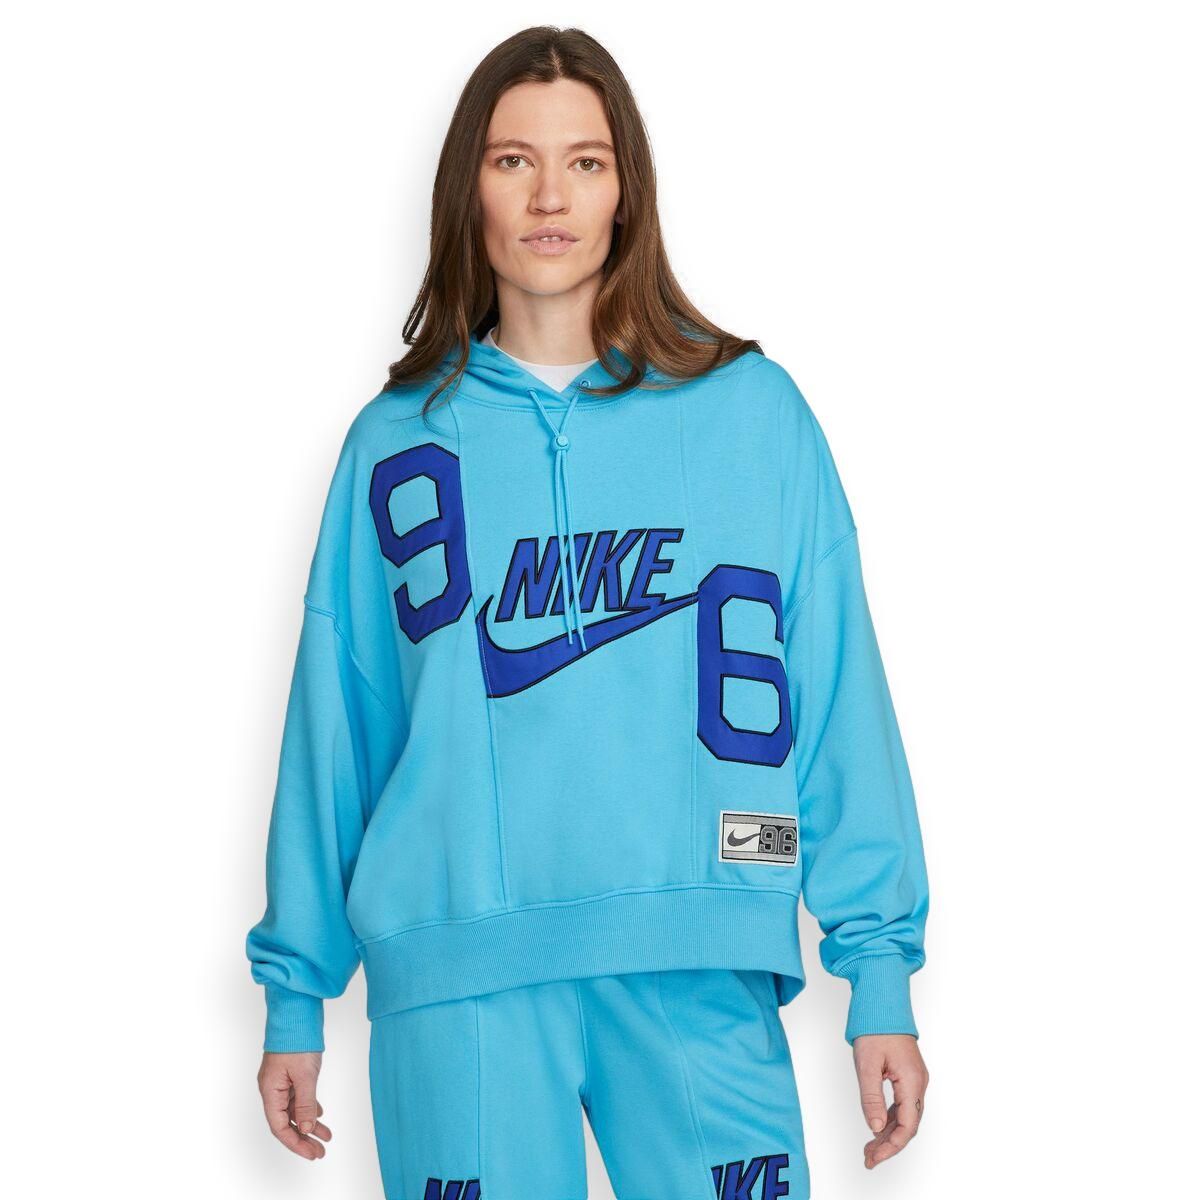 Nike Sportswear Circa 96 Pullover Hoddie Women's